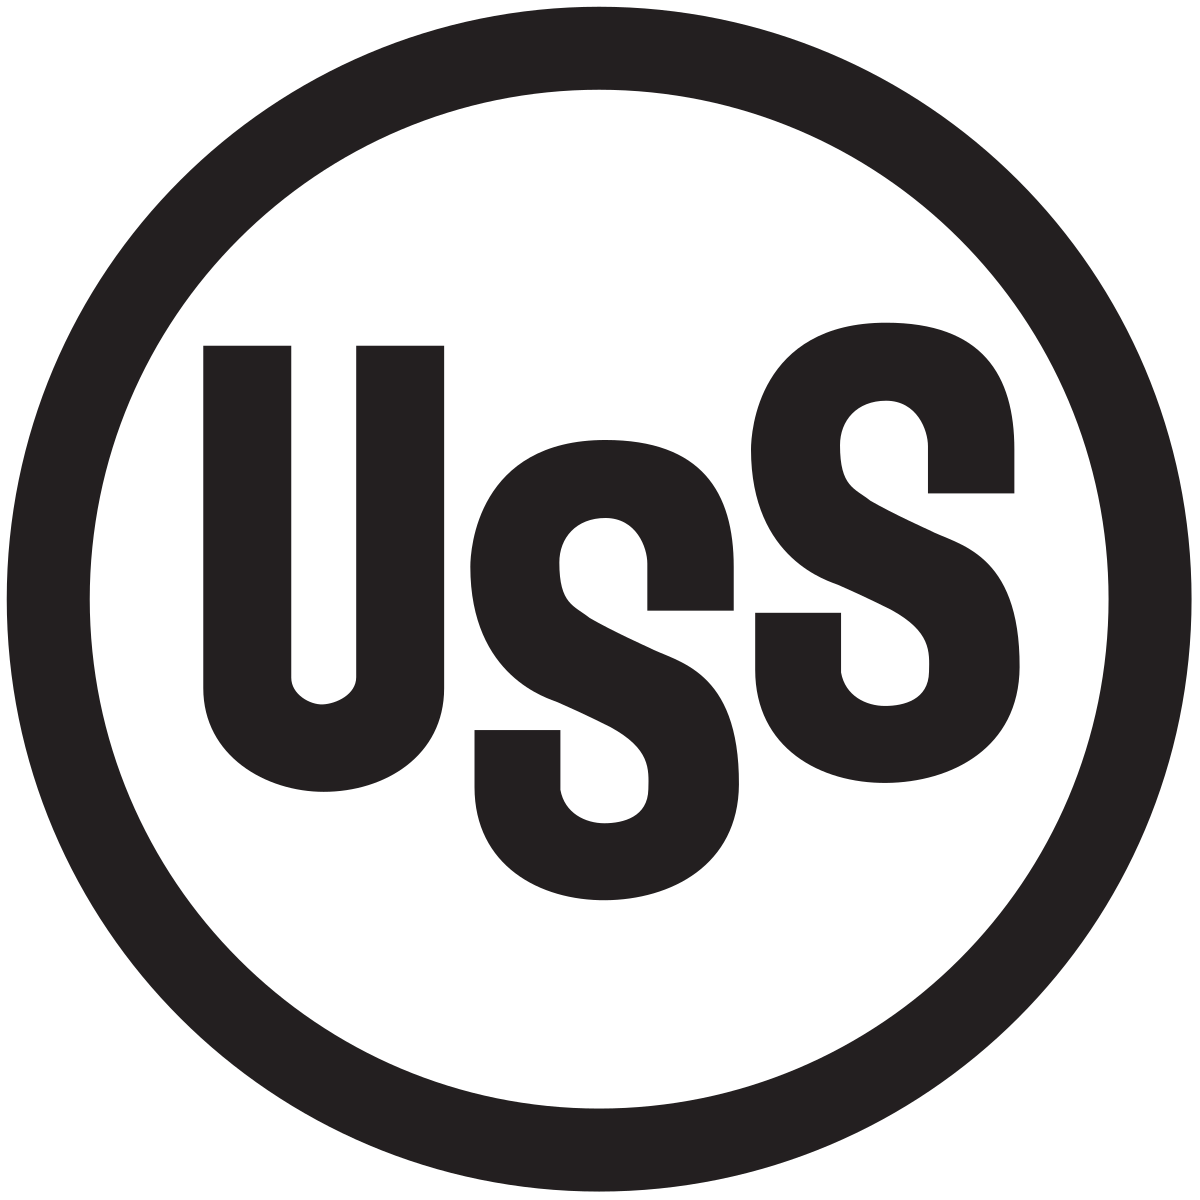 u.s. steel logo